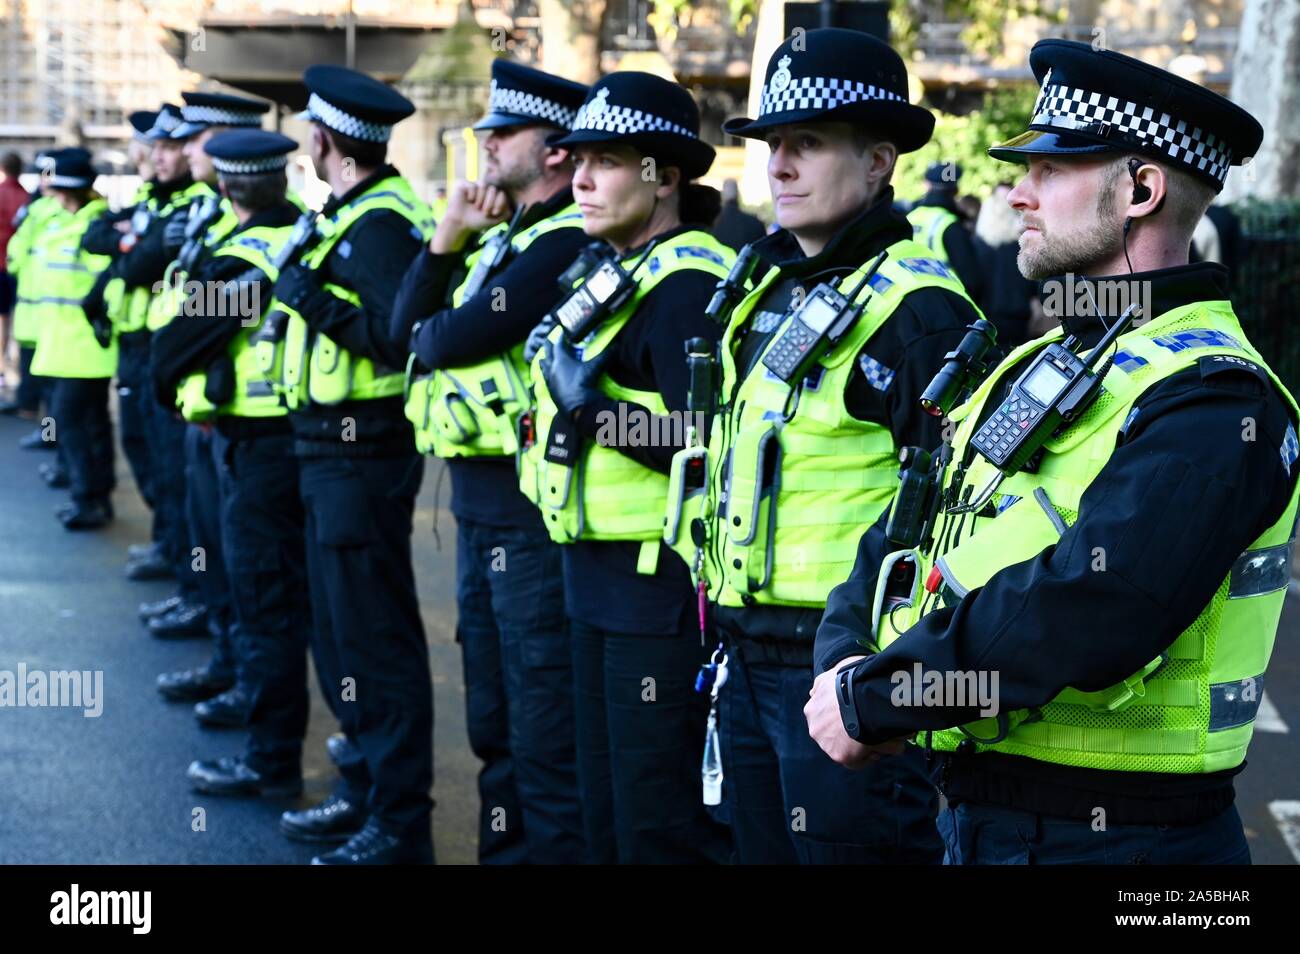 La police. Vote du peuple de mars. Près d'un million d'Anti-Brexit les manifestants ont marché sur le Parlement à la demande d'un second référendum.Palais de Westminster, Londres. UK Banque D'Images